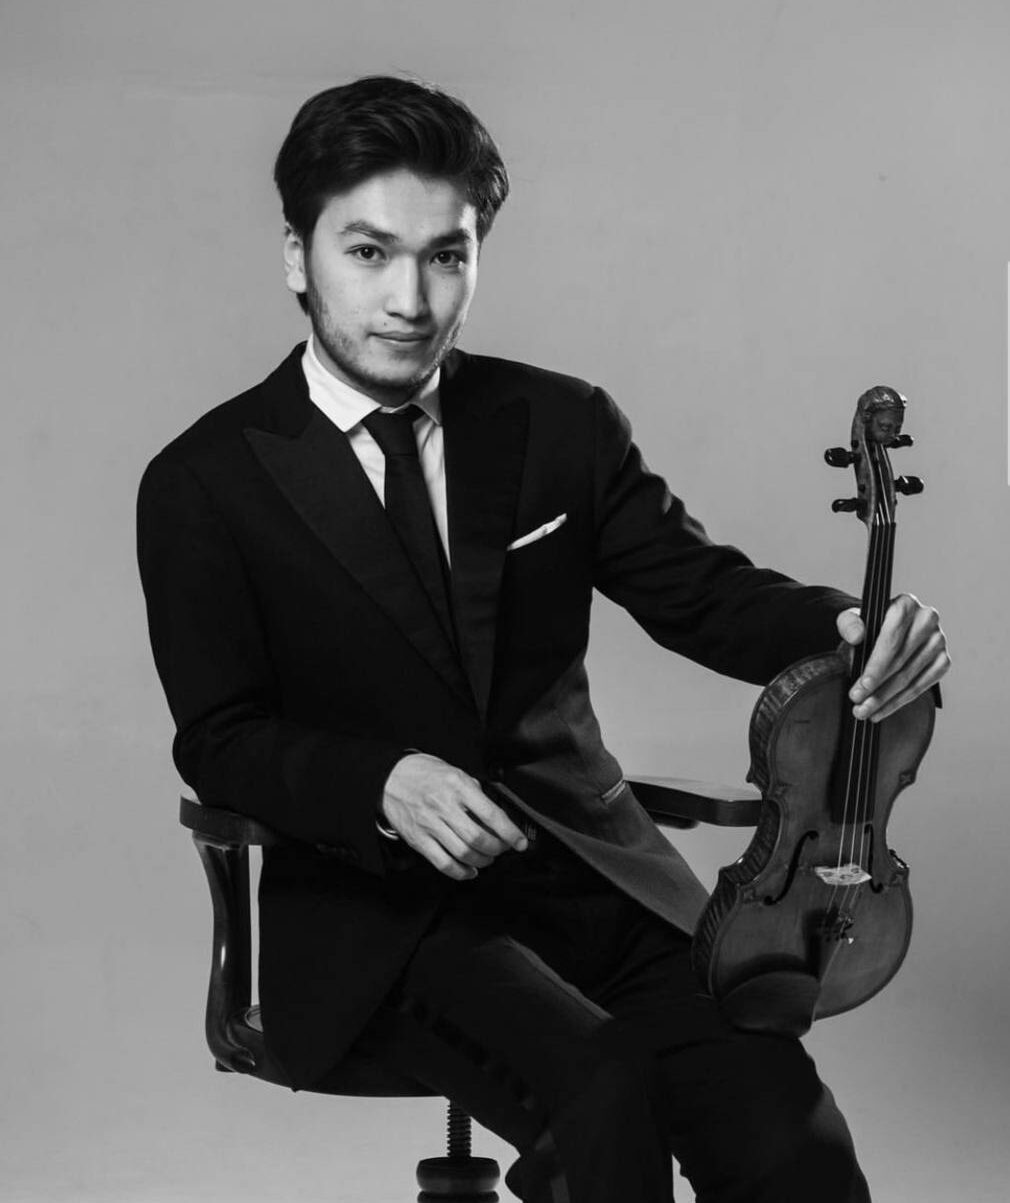 Kazašský houslista vyhrál soutěž World Vision